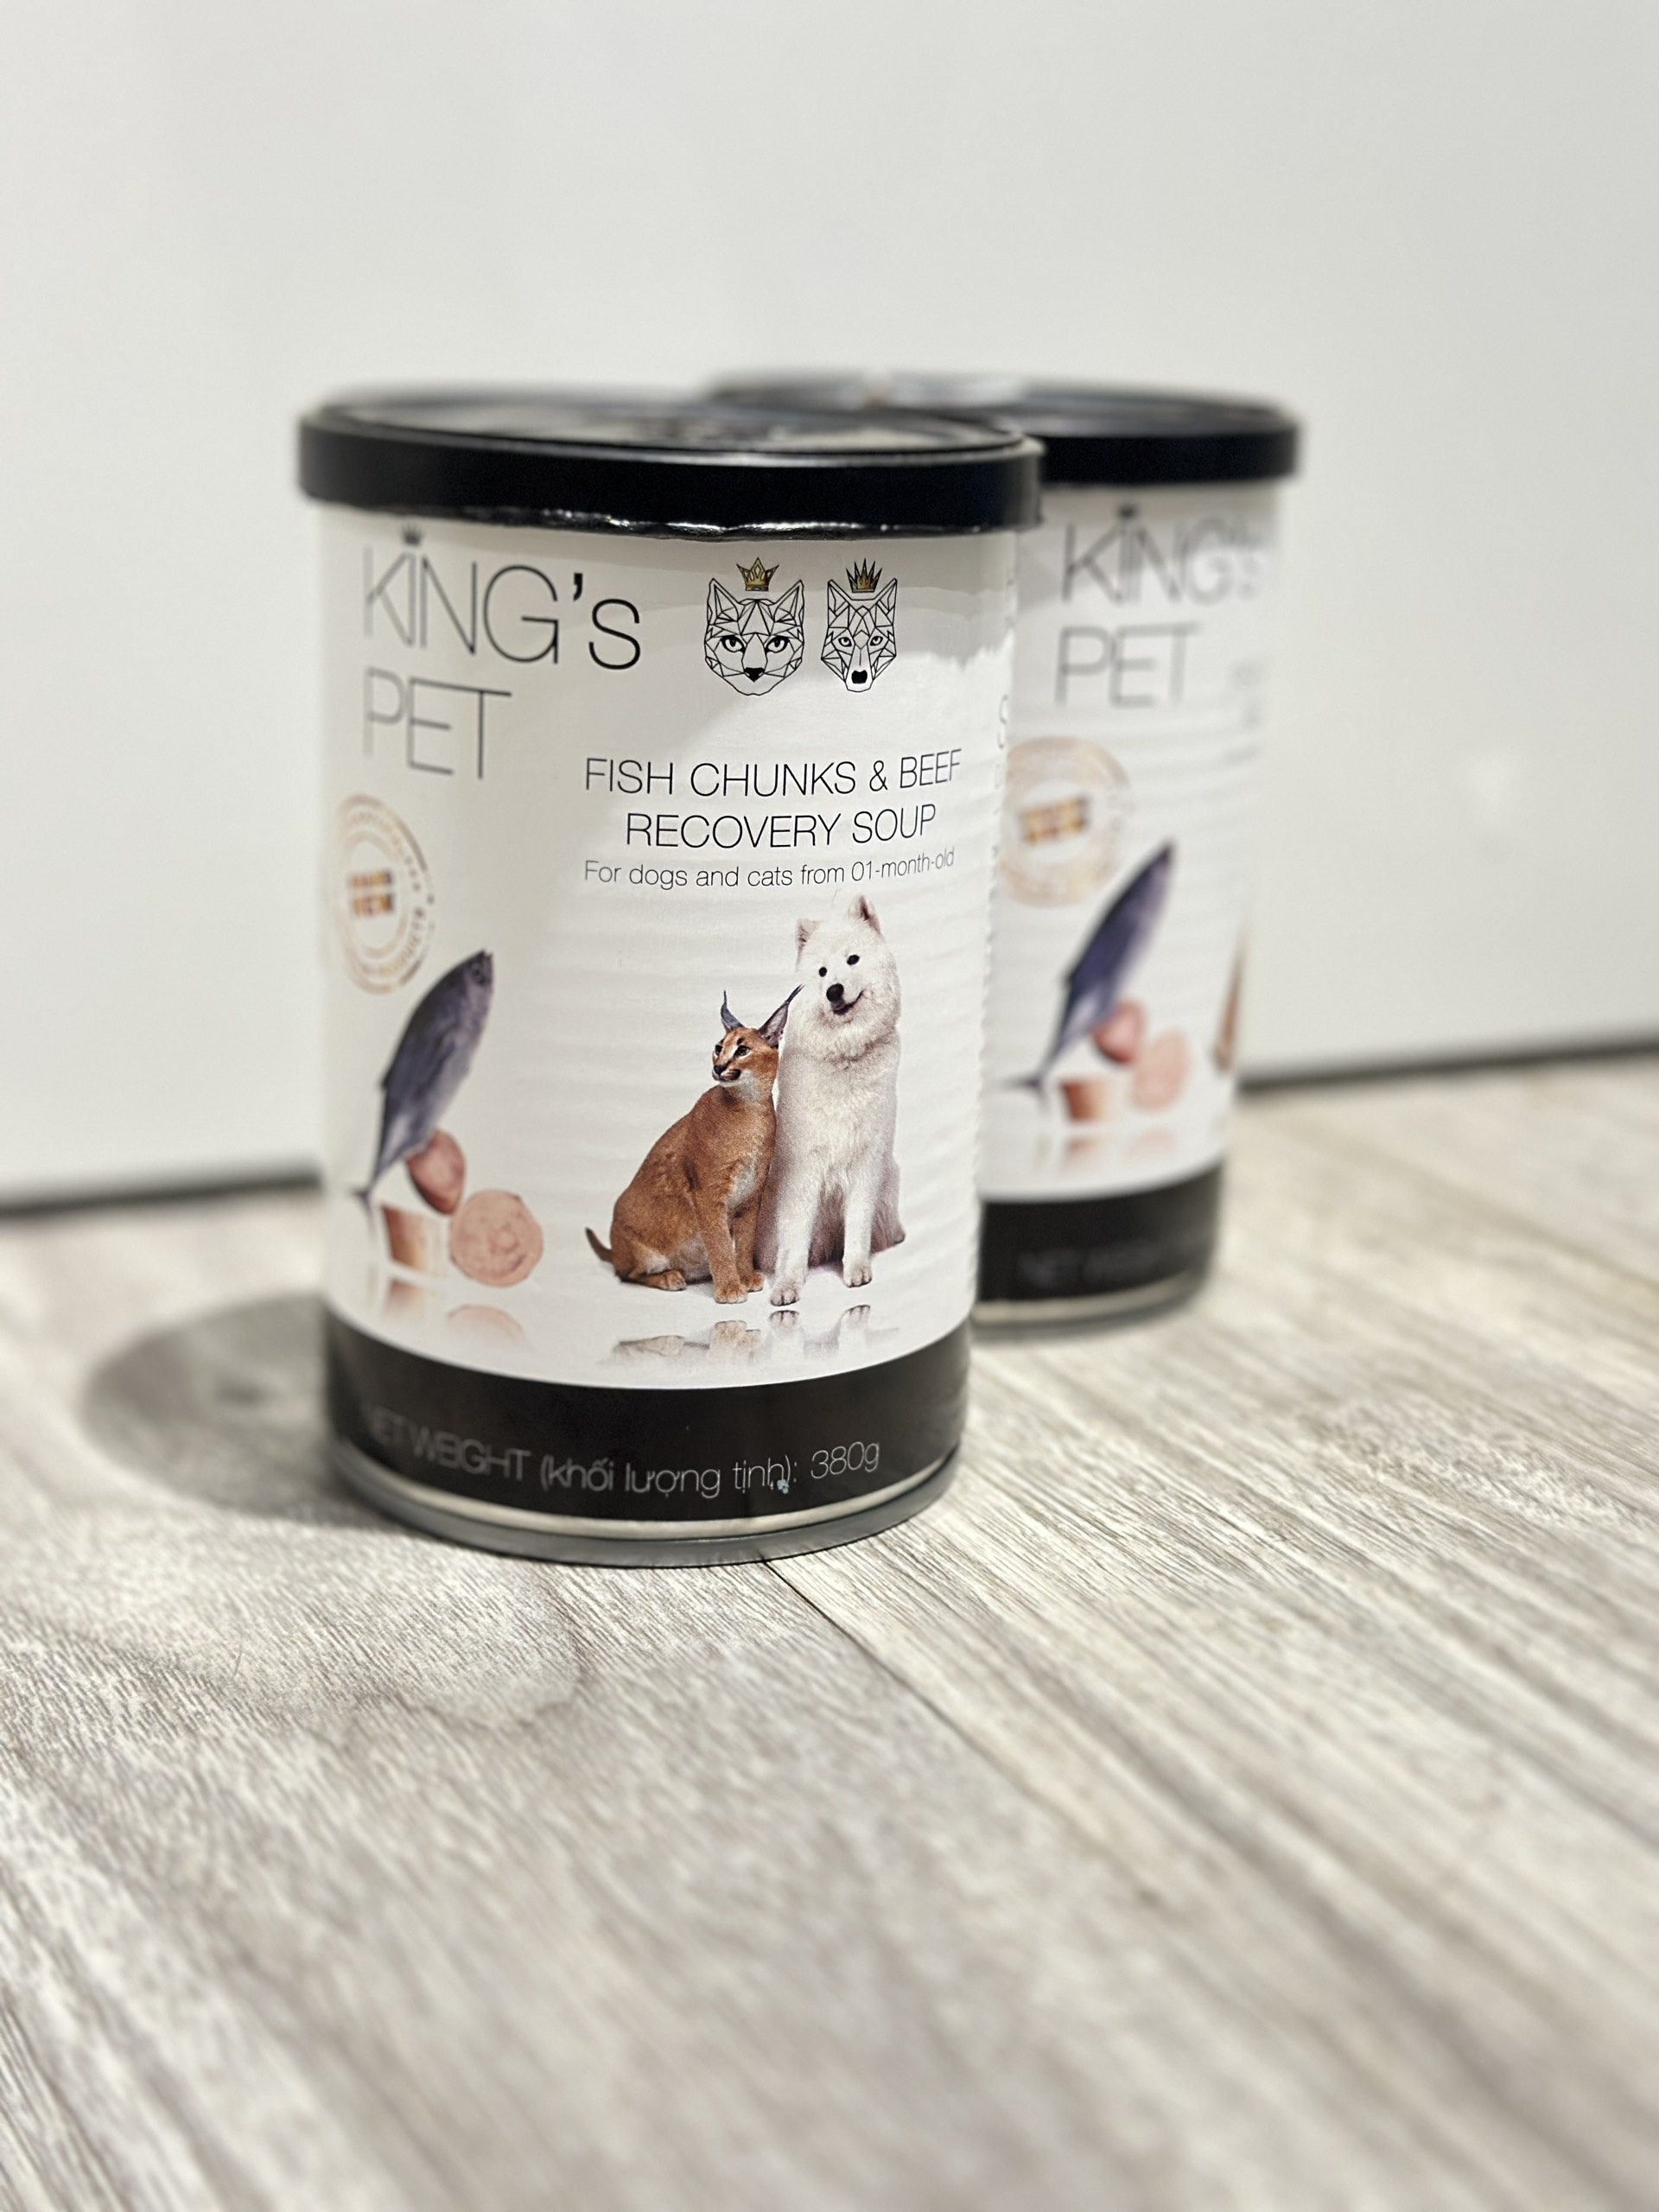 King's Pet-Pate Súp Cá Sốt Bò lon 380Gr cho CHÓ &amp; MÈO từ 1 tháng tuổi [Fish Chunks &amp; Beef Recovery Soup]